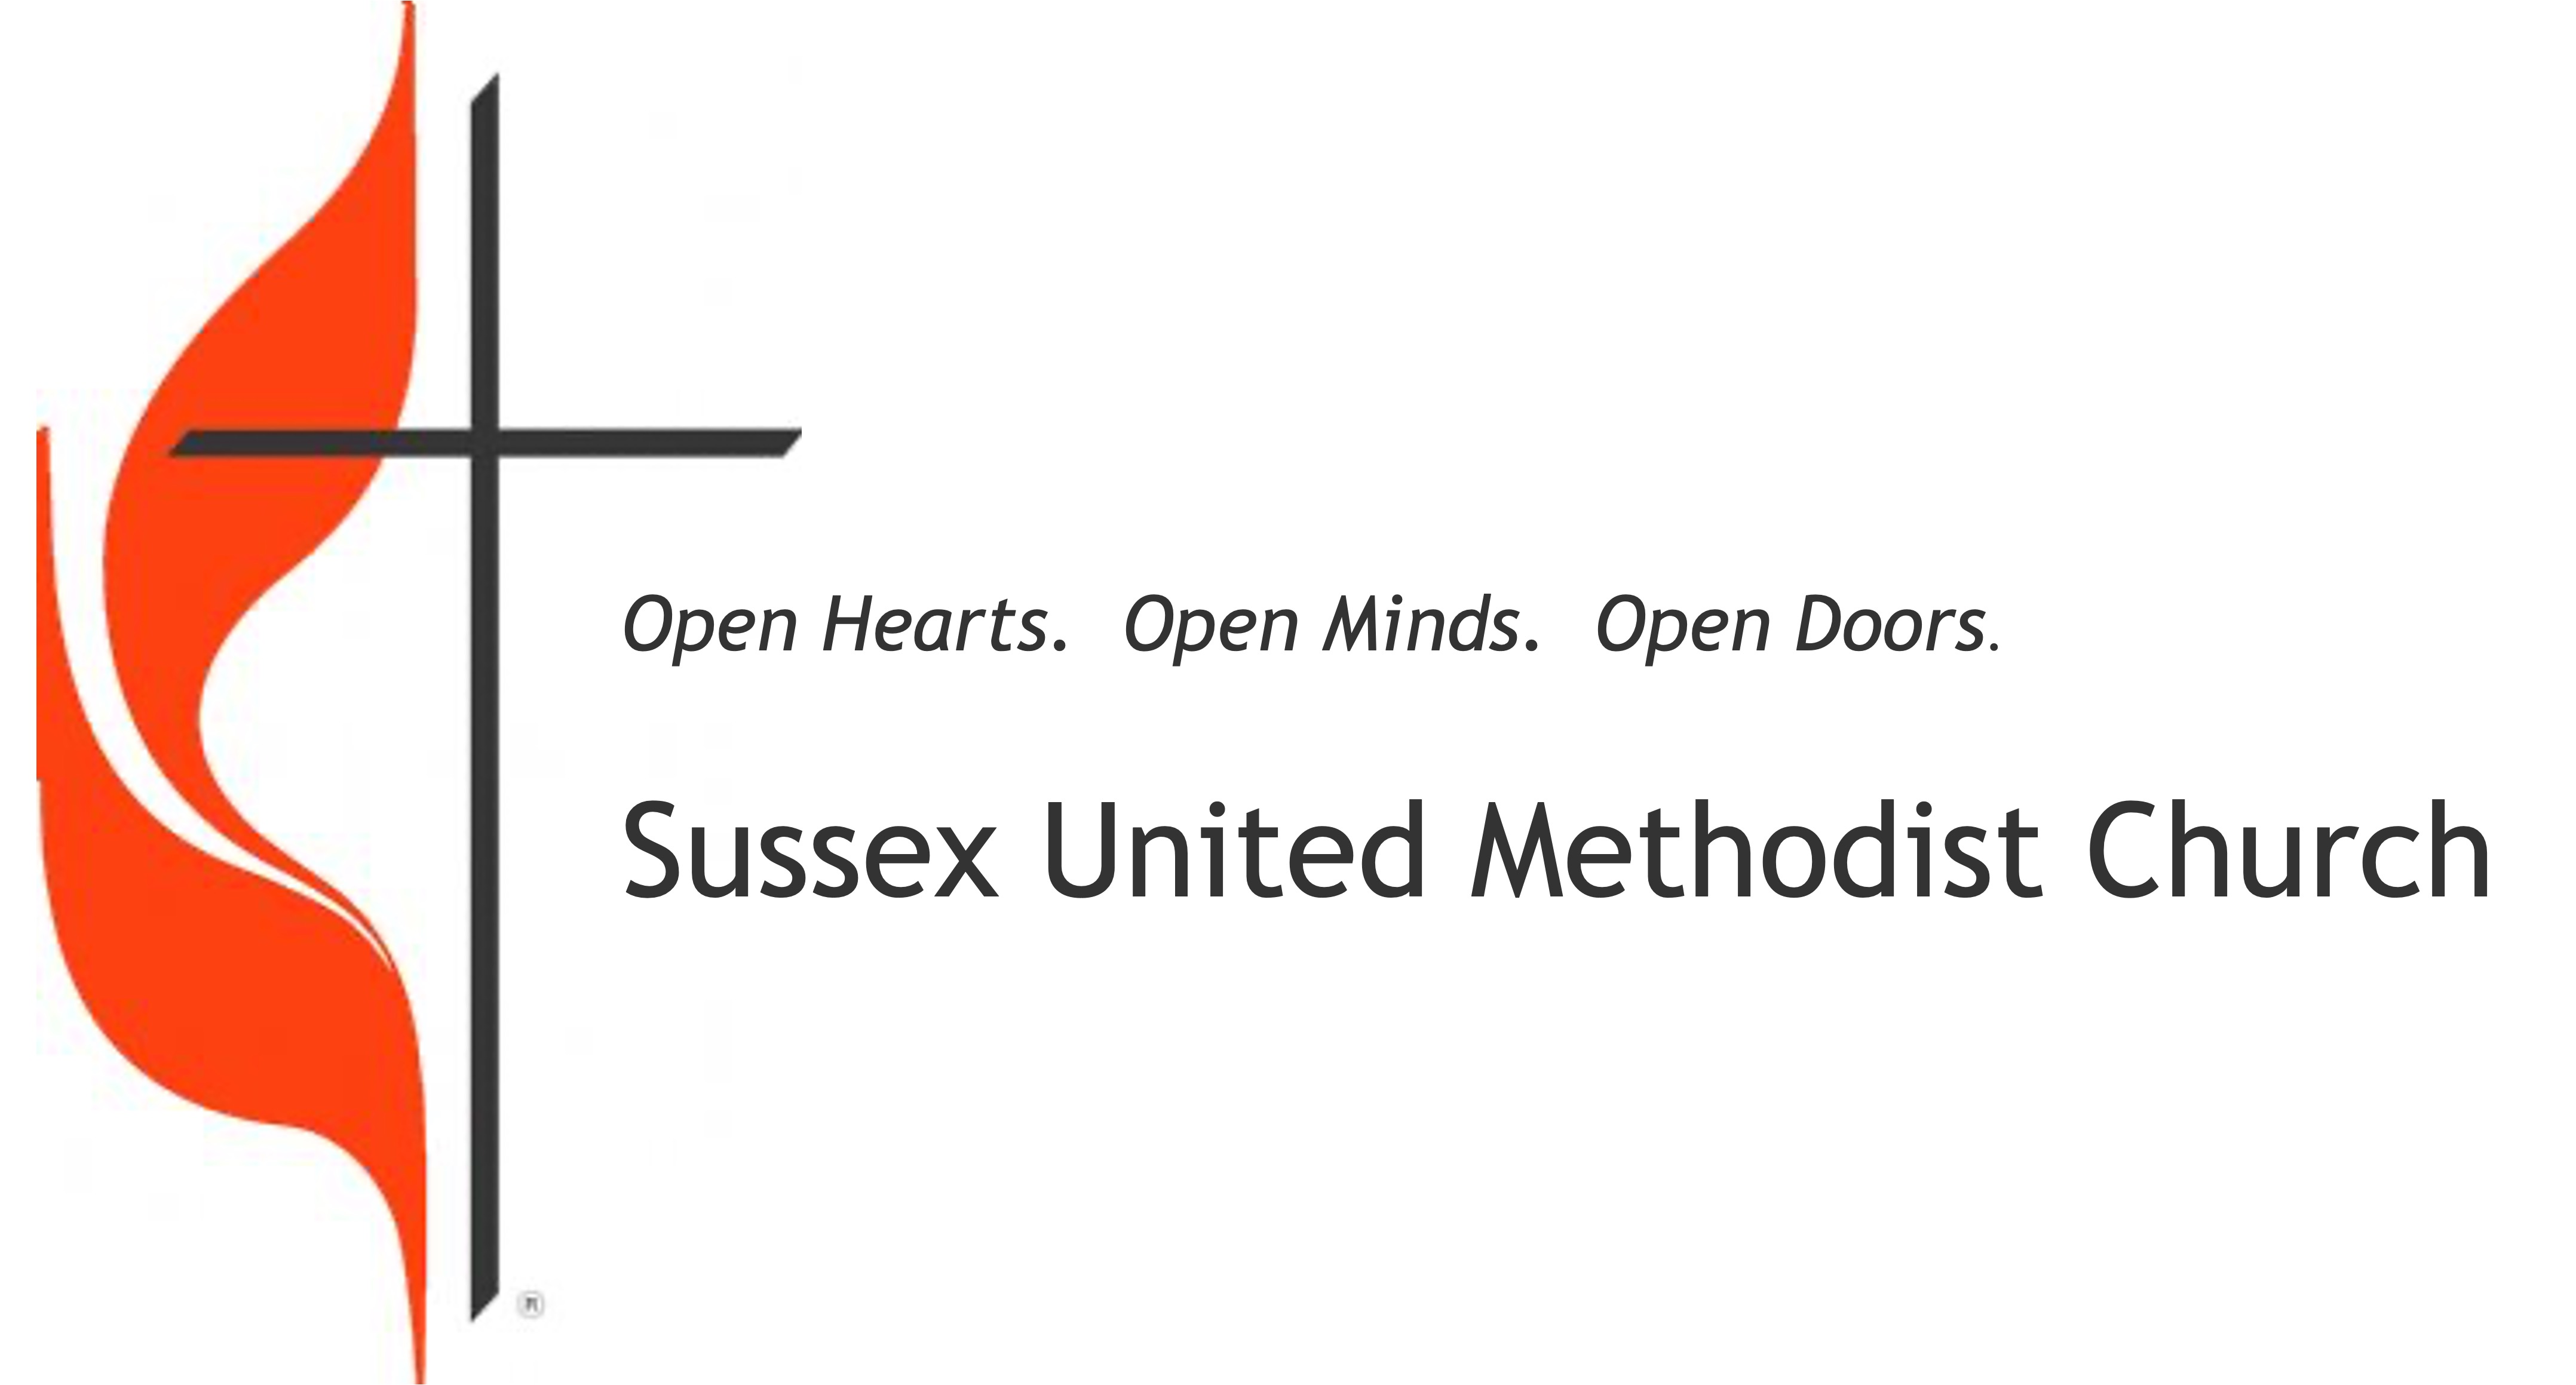 SUSSEX UNITED METHODIST CHURCH